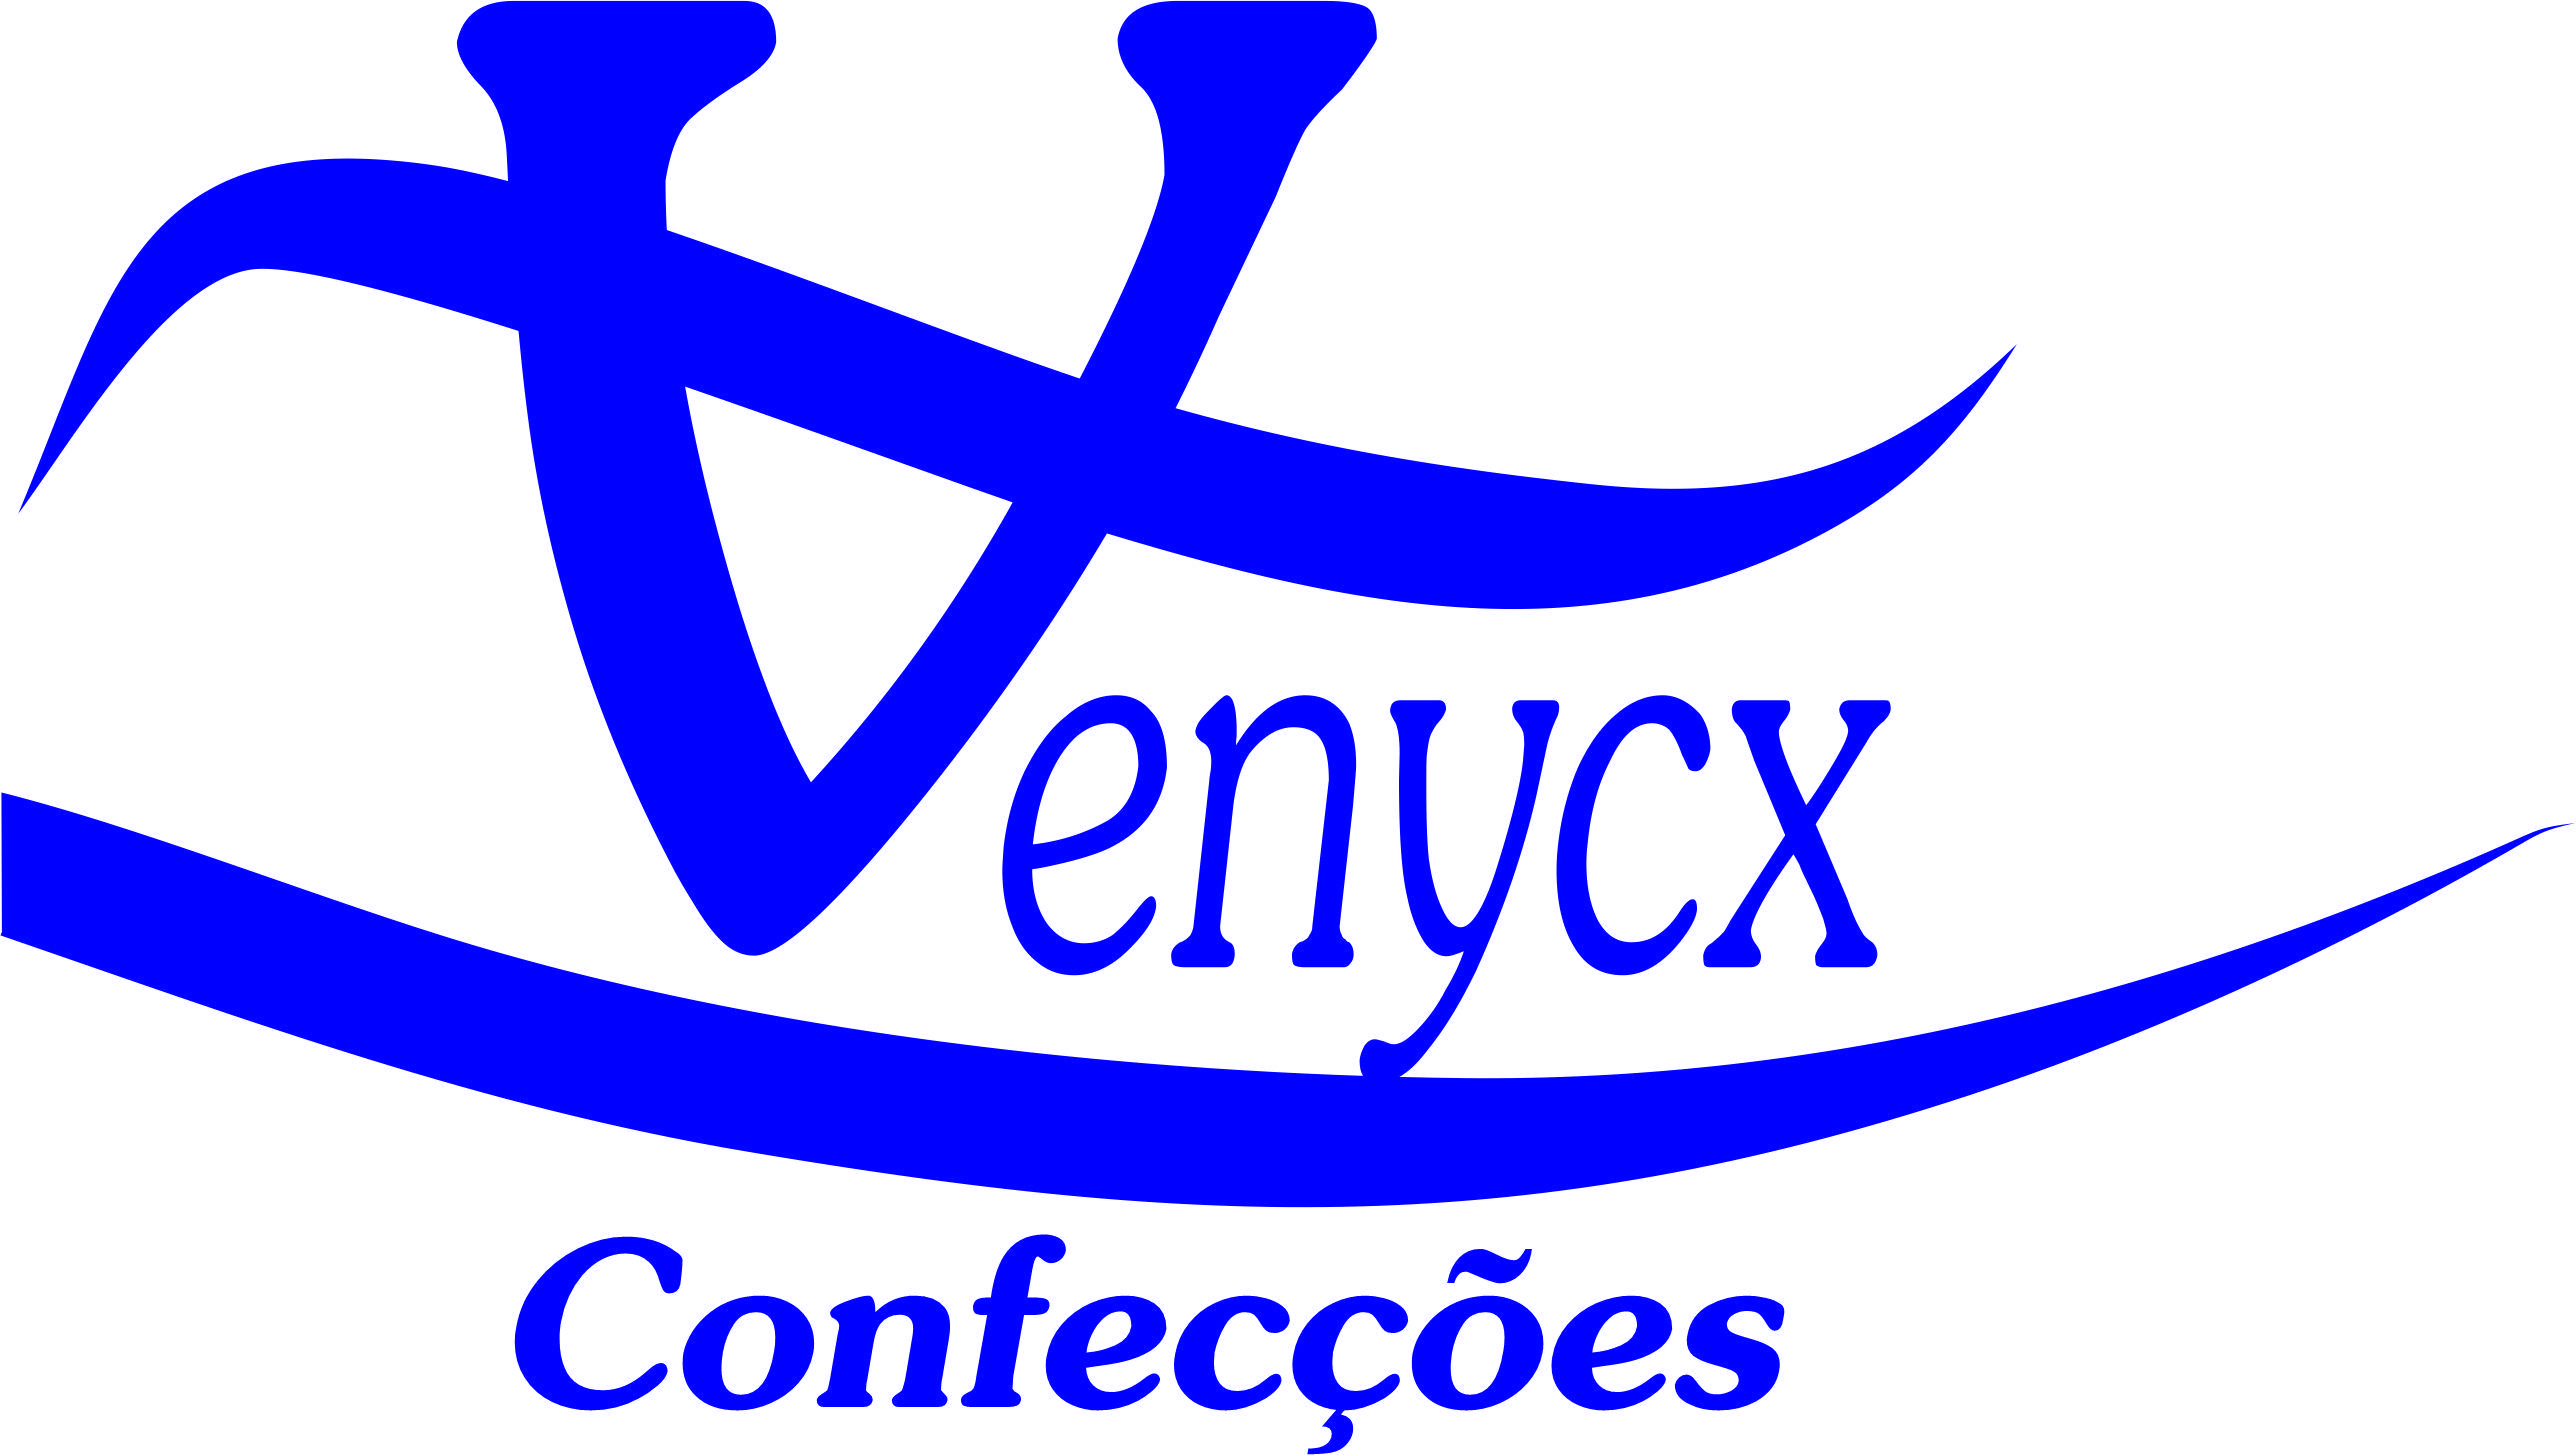 venycx confecções Logo